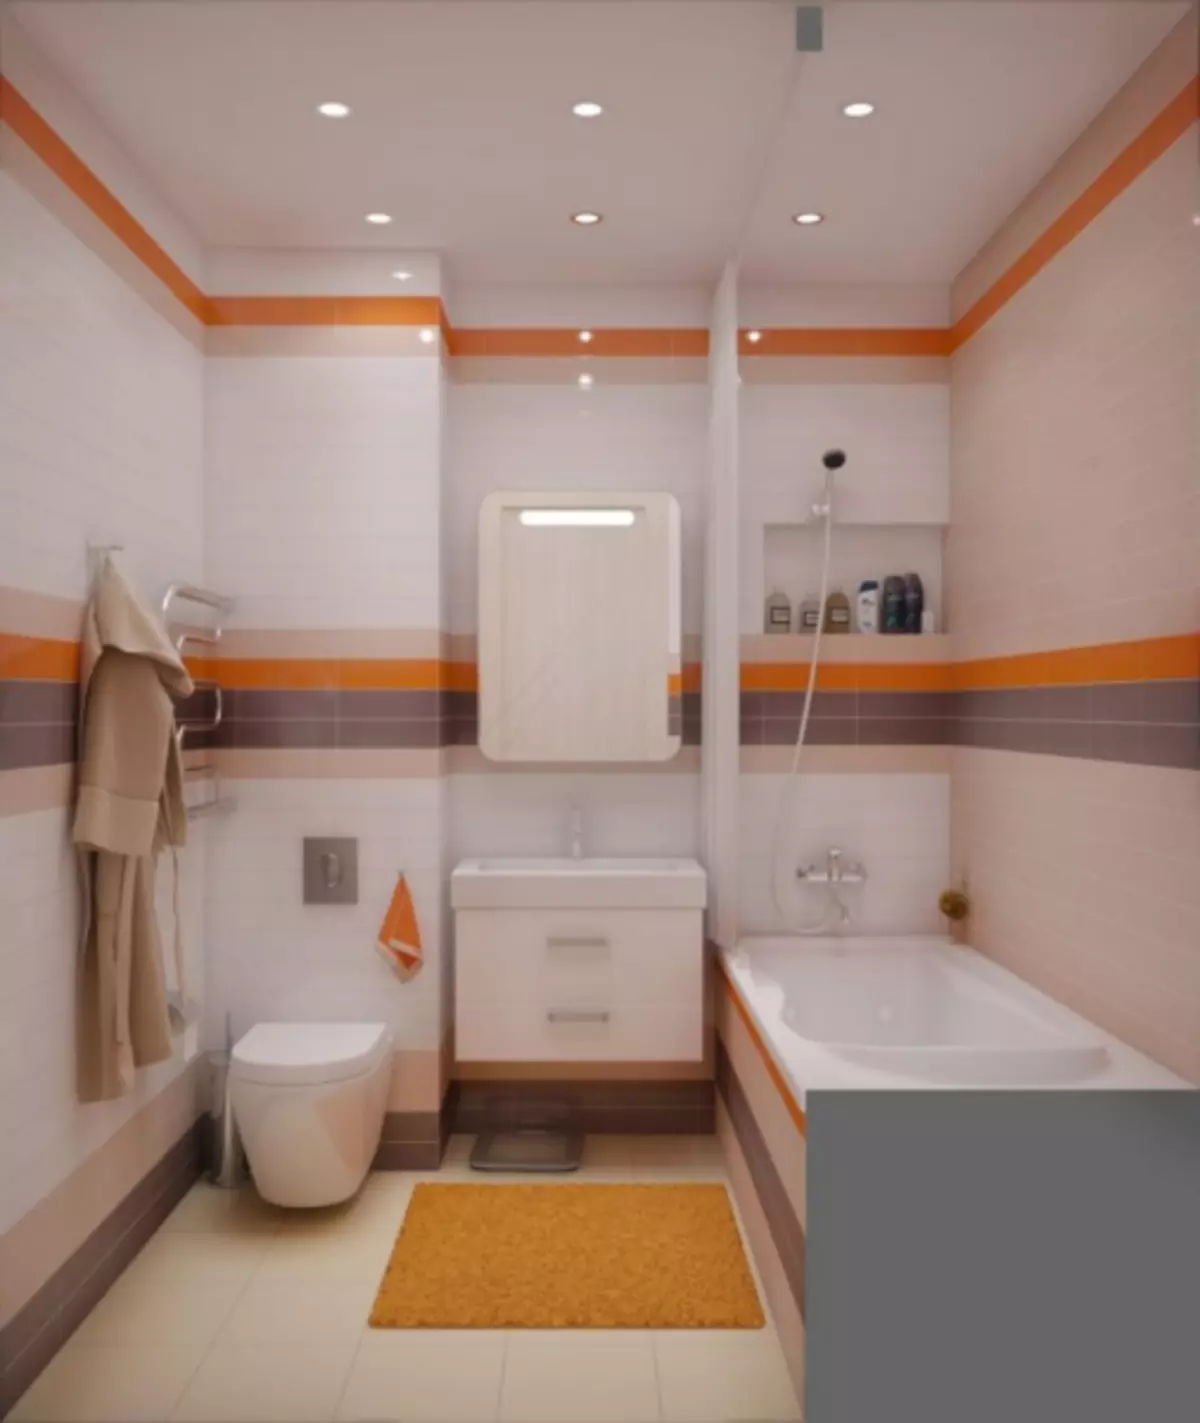 バスルーム3平方メートル。 m。 - 最高の設計例の80枚の写真